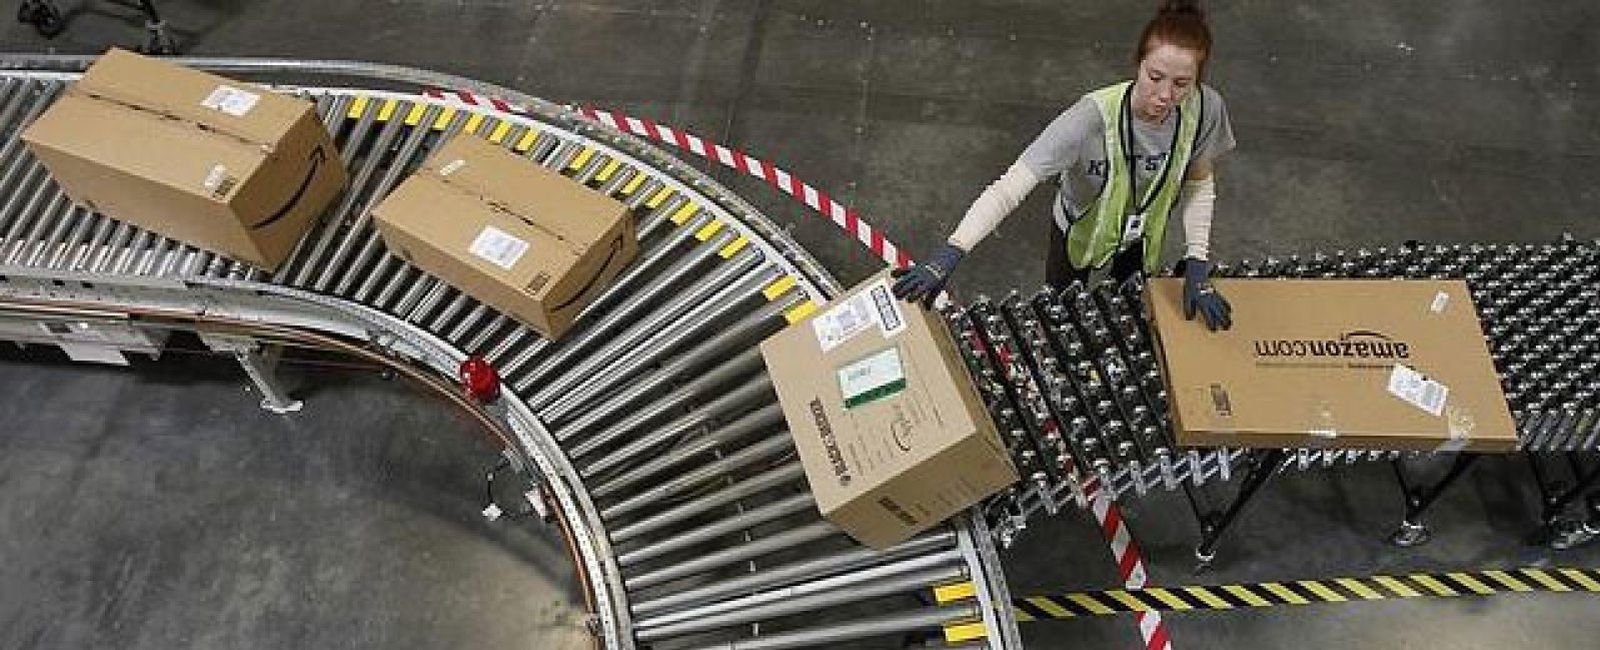 Foto: Francia reclama a Amazon casi 200 millones de euros por impuestos